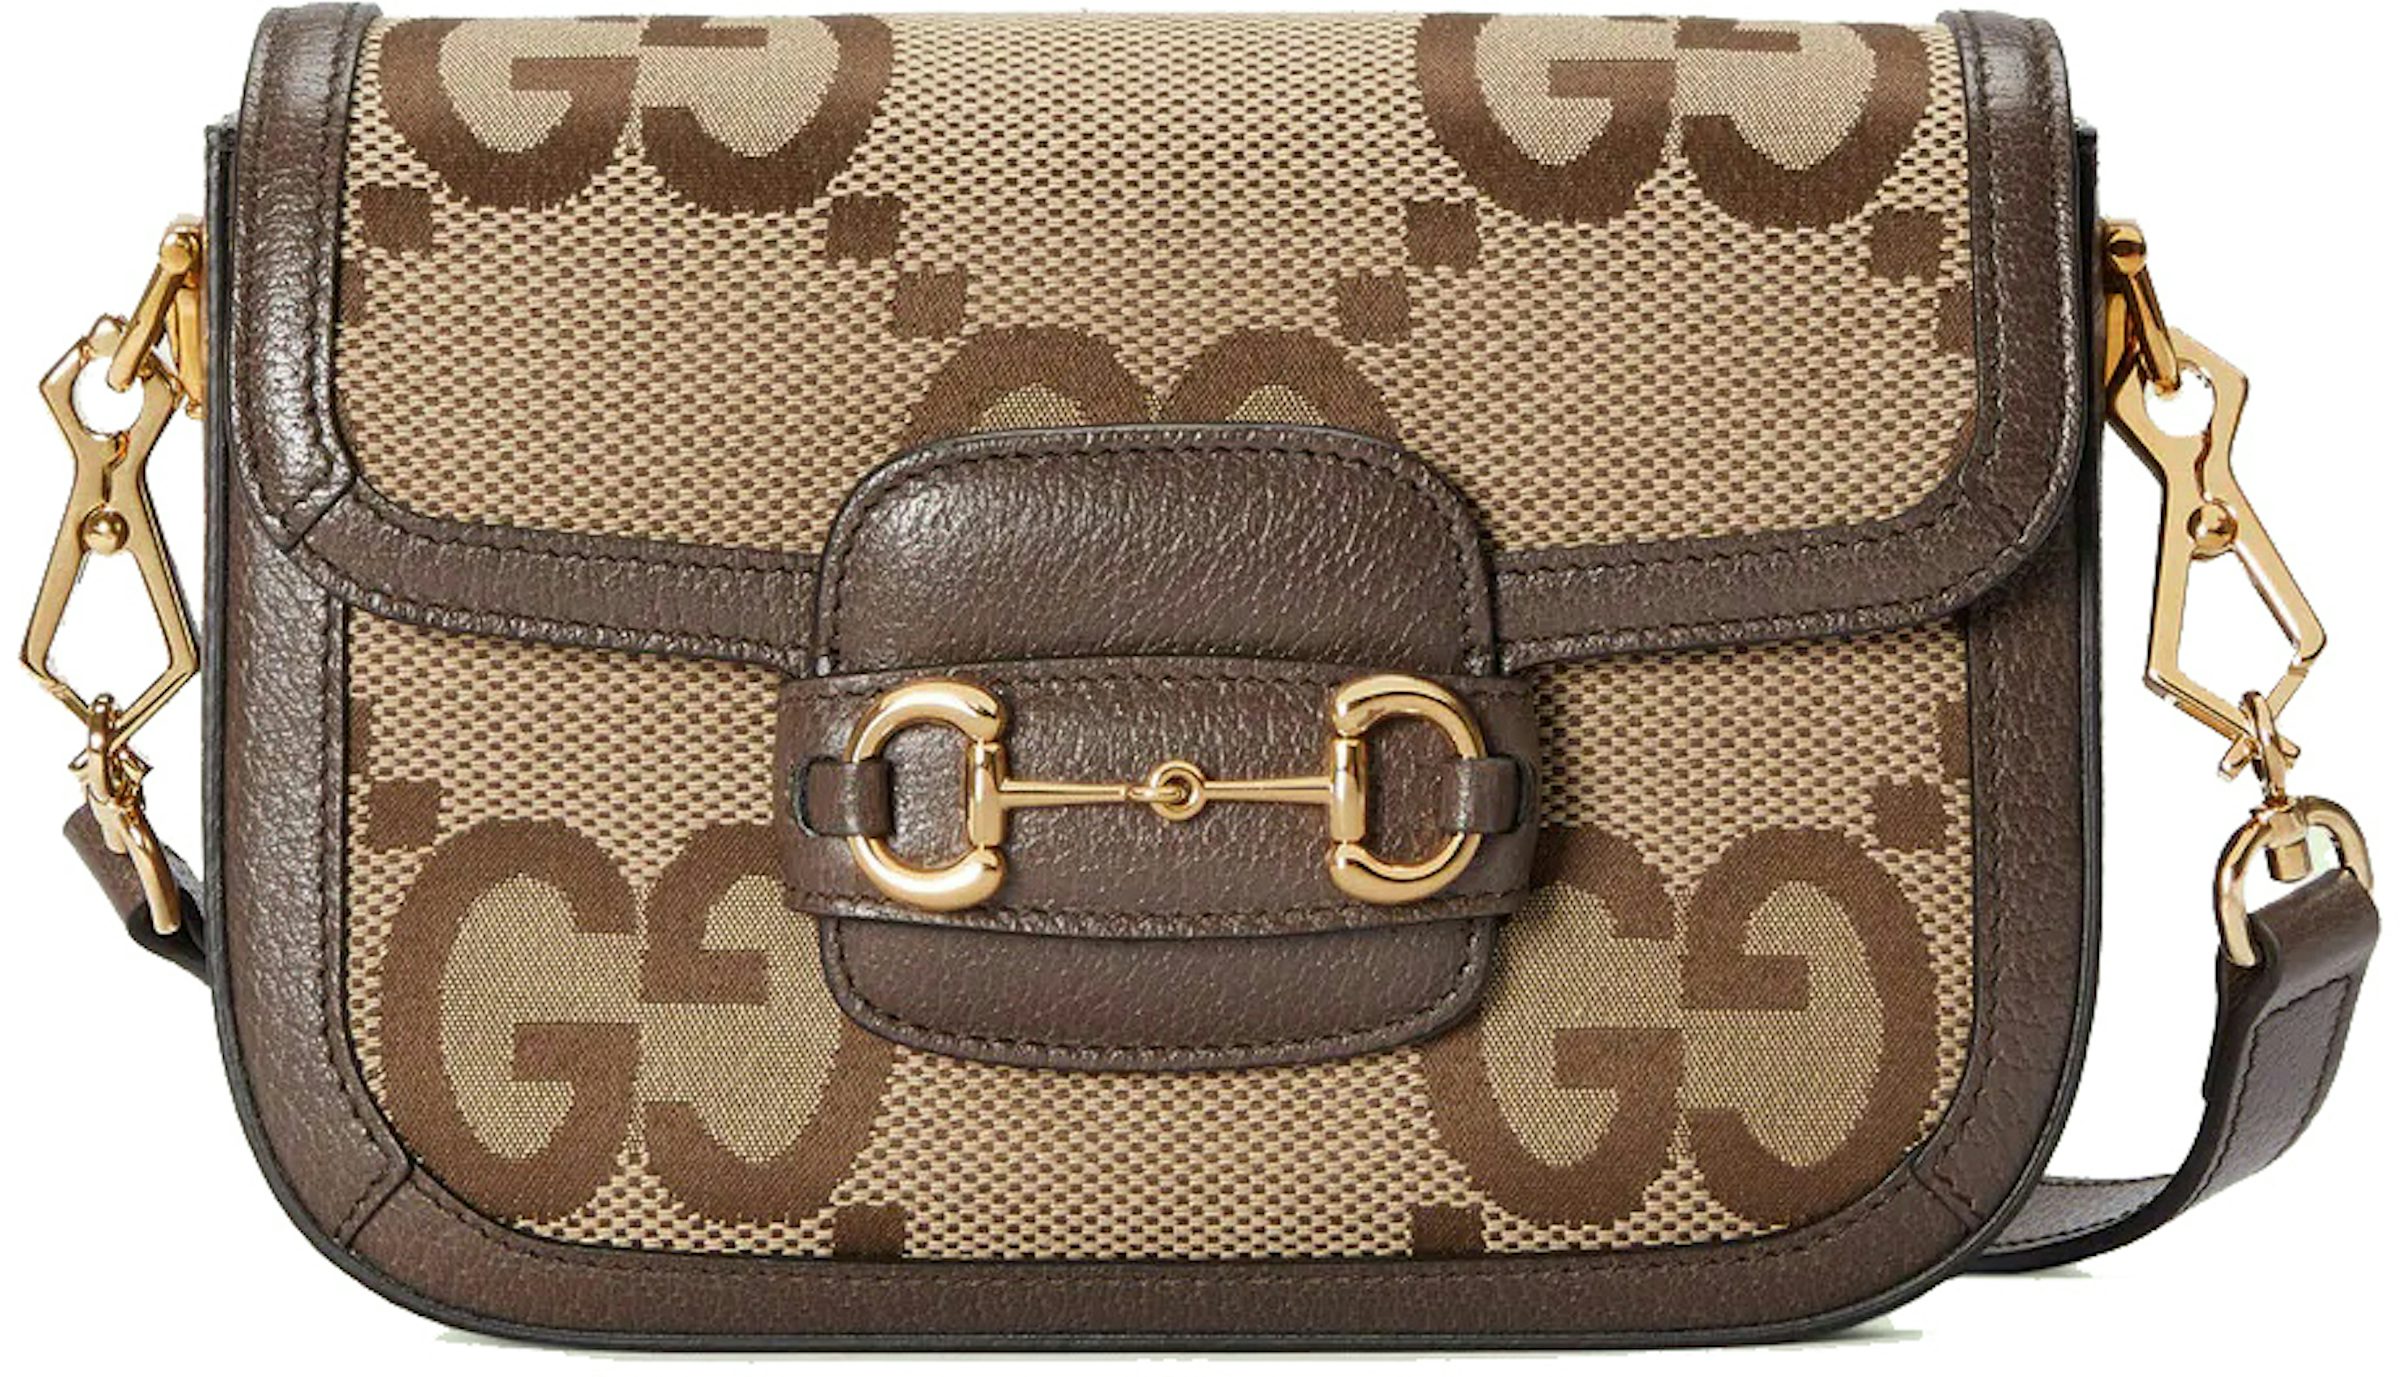 Gucci Horsebit 1955 GG Mini Crossbody Bag in Beige - Gucci